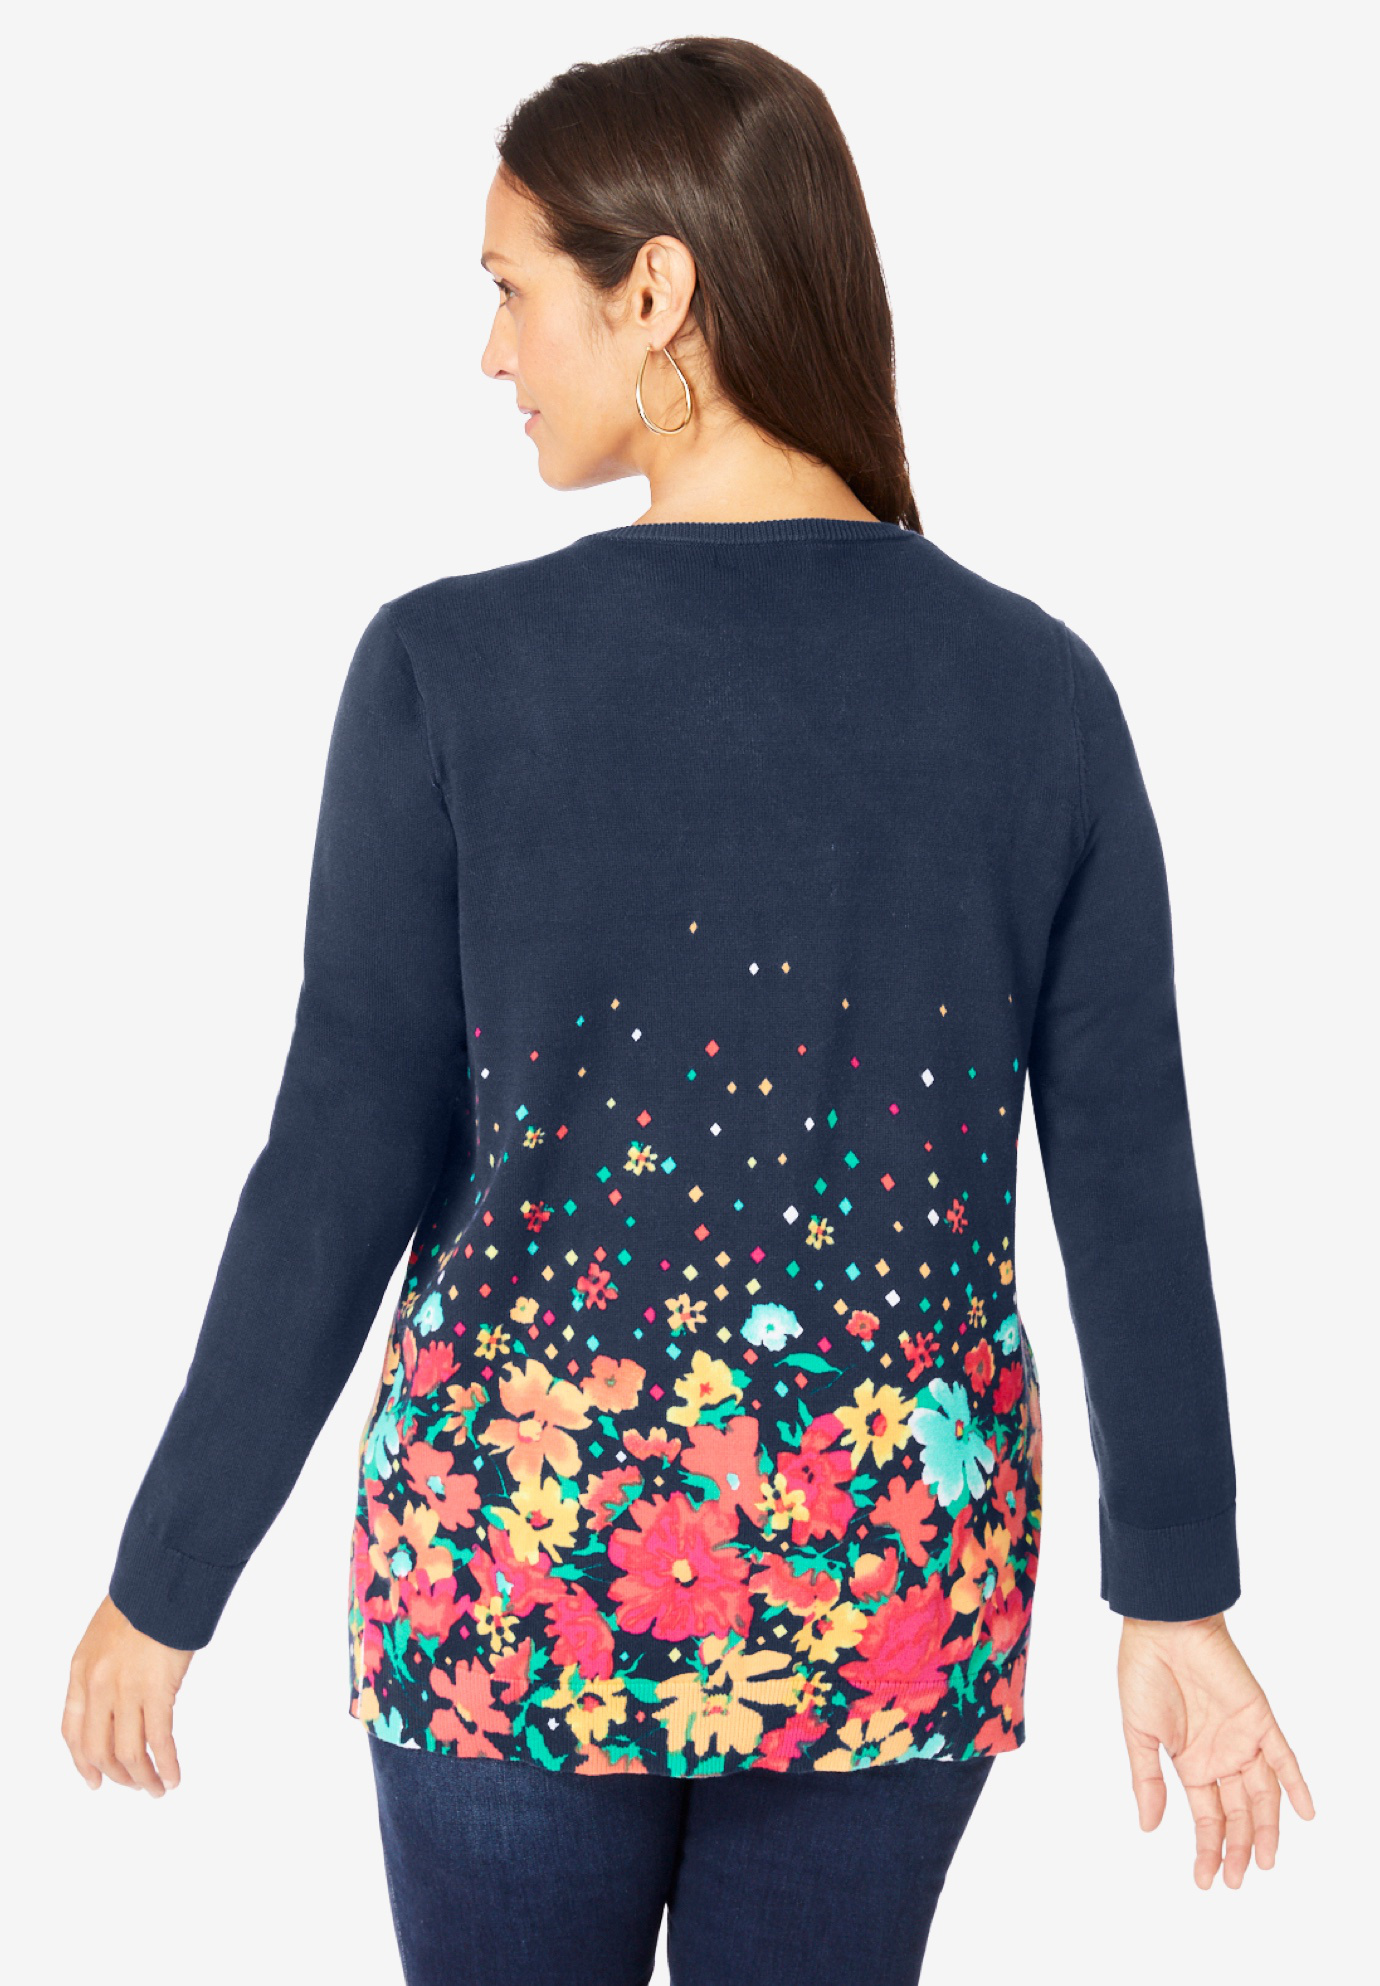 Jessica London Women's Plus Size Fine Gauge Cardigan Sweater - image 3 of 6